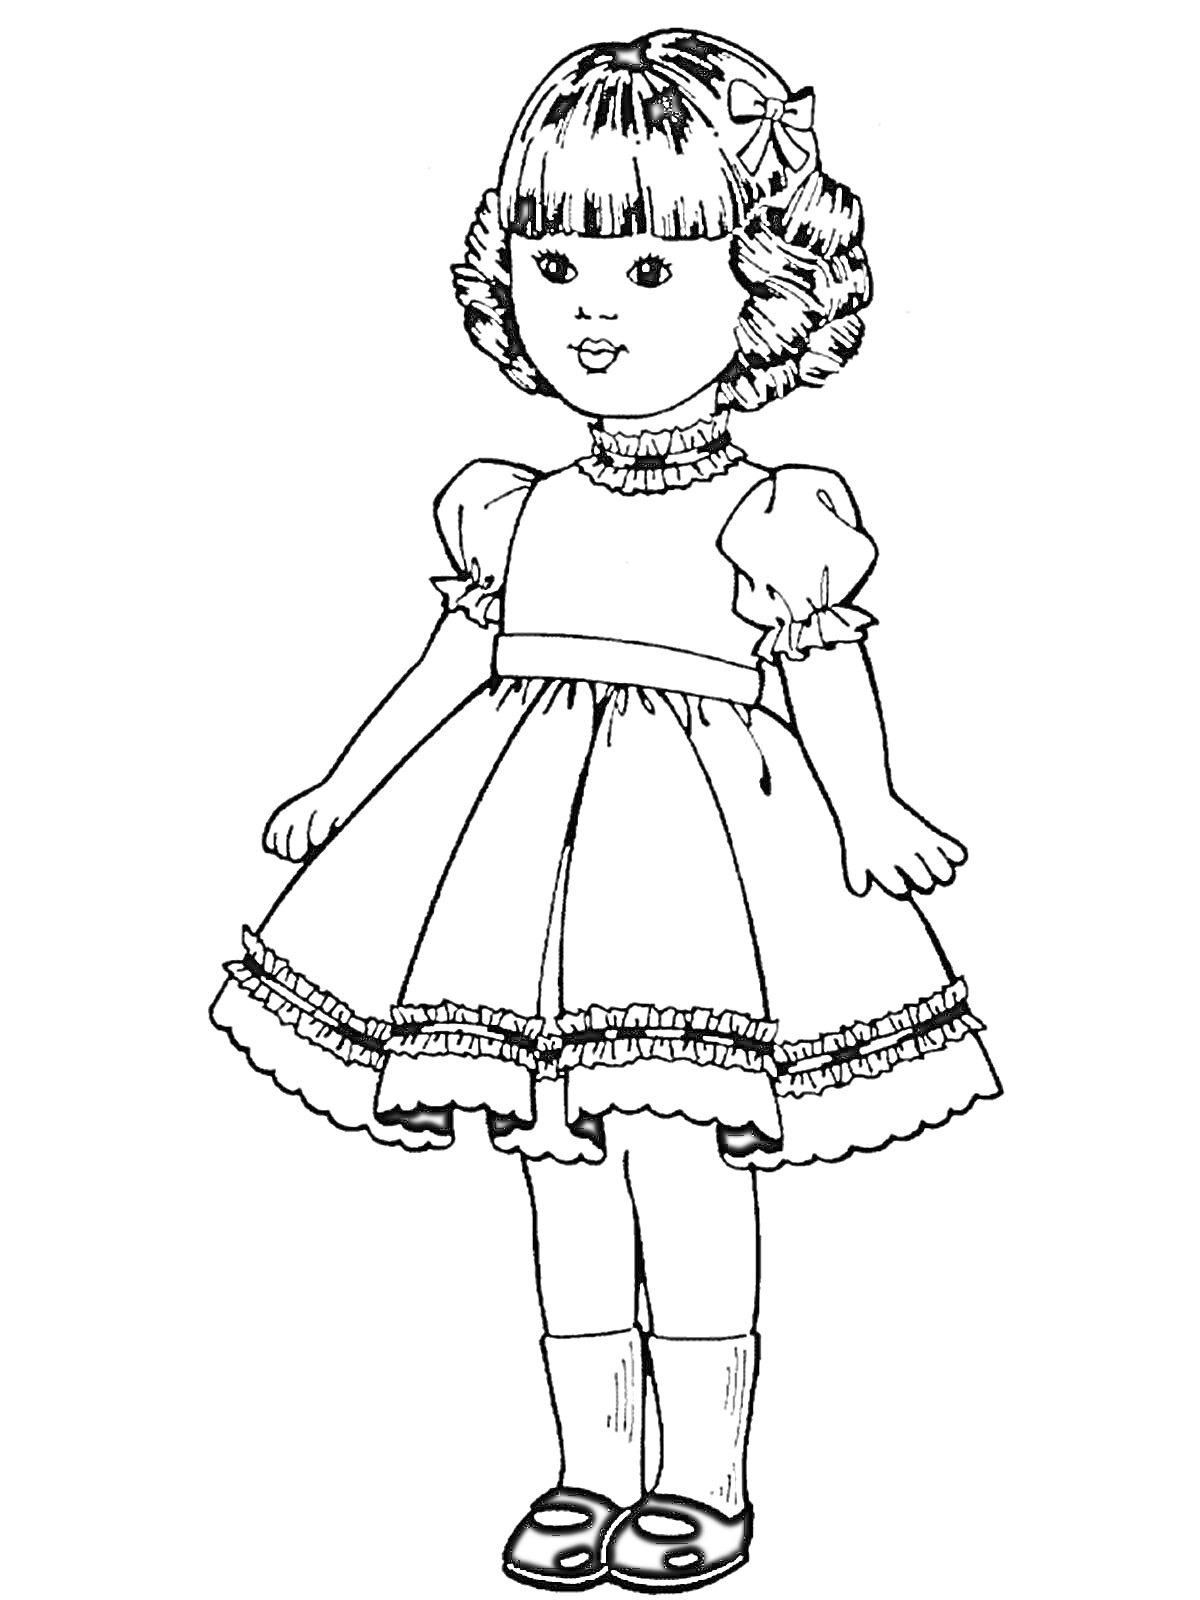 Раскраска Кукла в платье с бантом в волосах